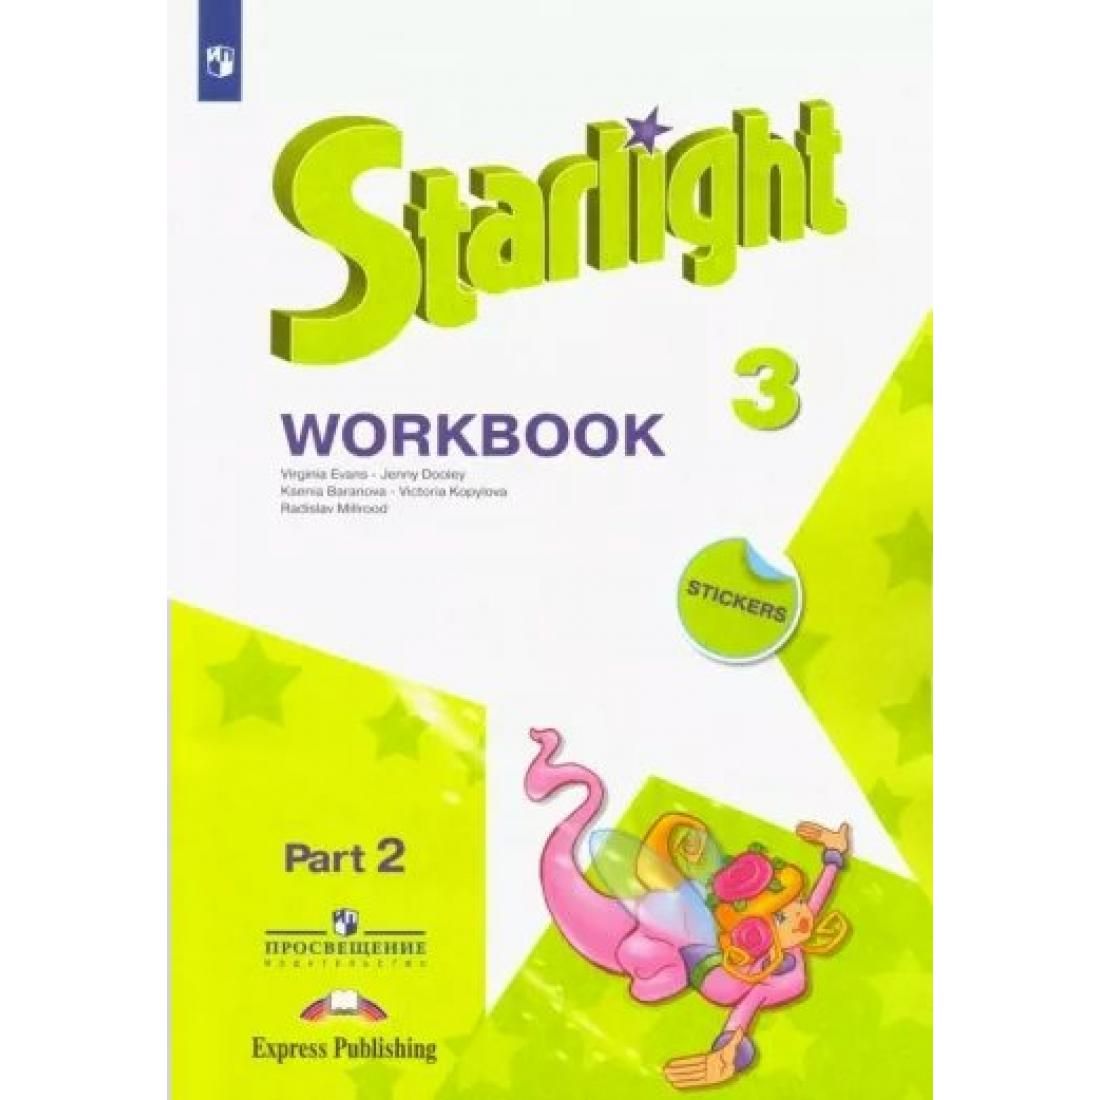 Звездные английский 8 класс тетрадь. Starlight 3 Workbook 2 часть. Workbook 3 класс Starlight 2 часть. Starlight 2 Workbook Part 2. Starlight Workbook 2 класс 2 часть.